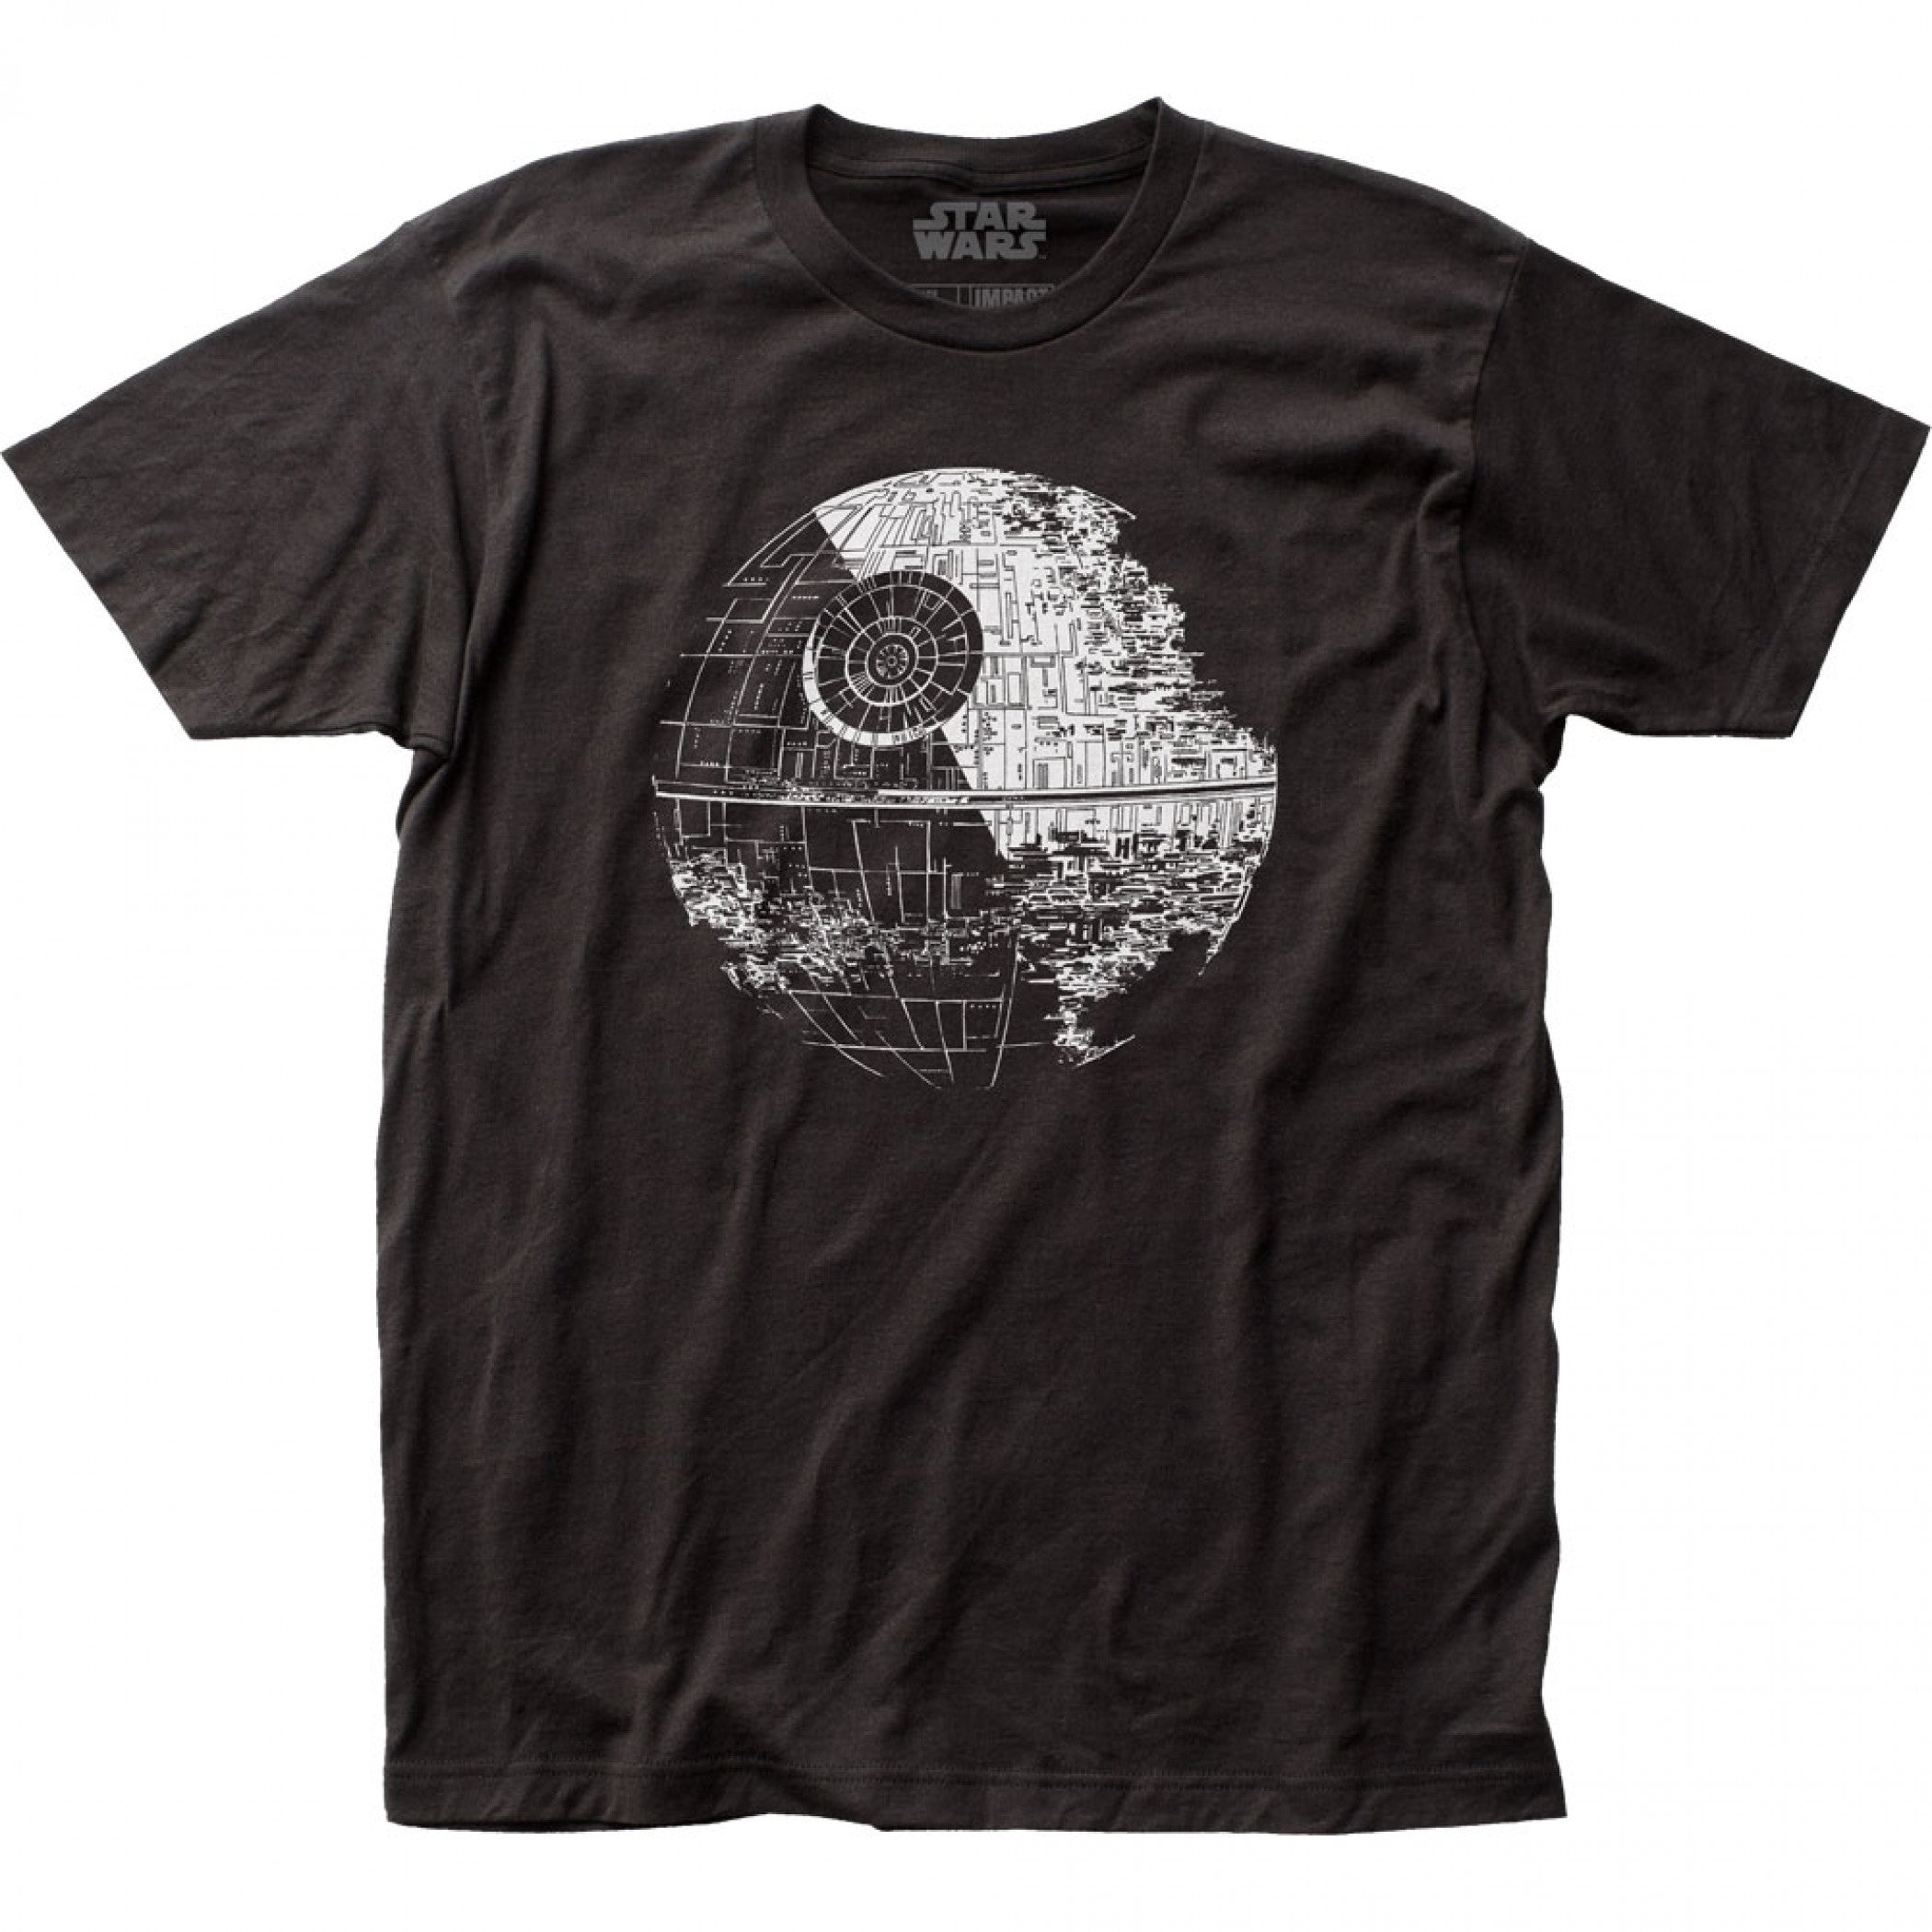 Star Wars Return of the Jedi Death Star T-Shirt